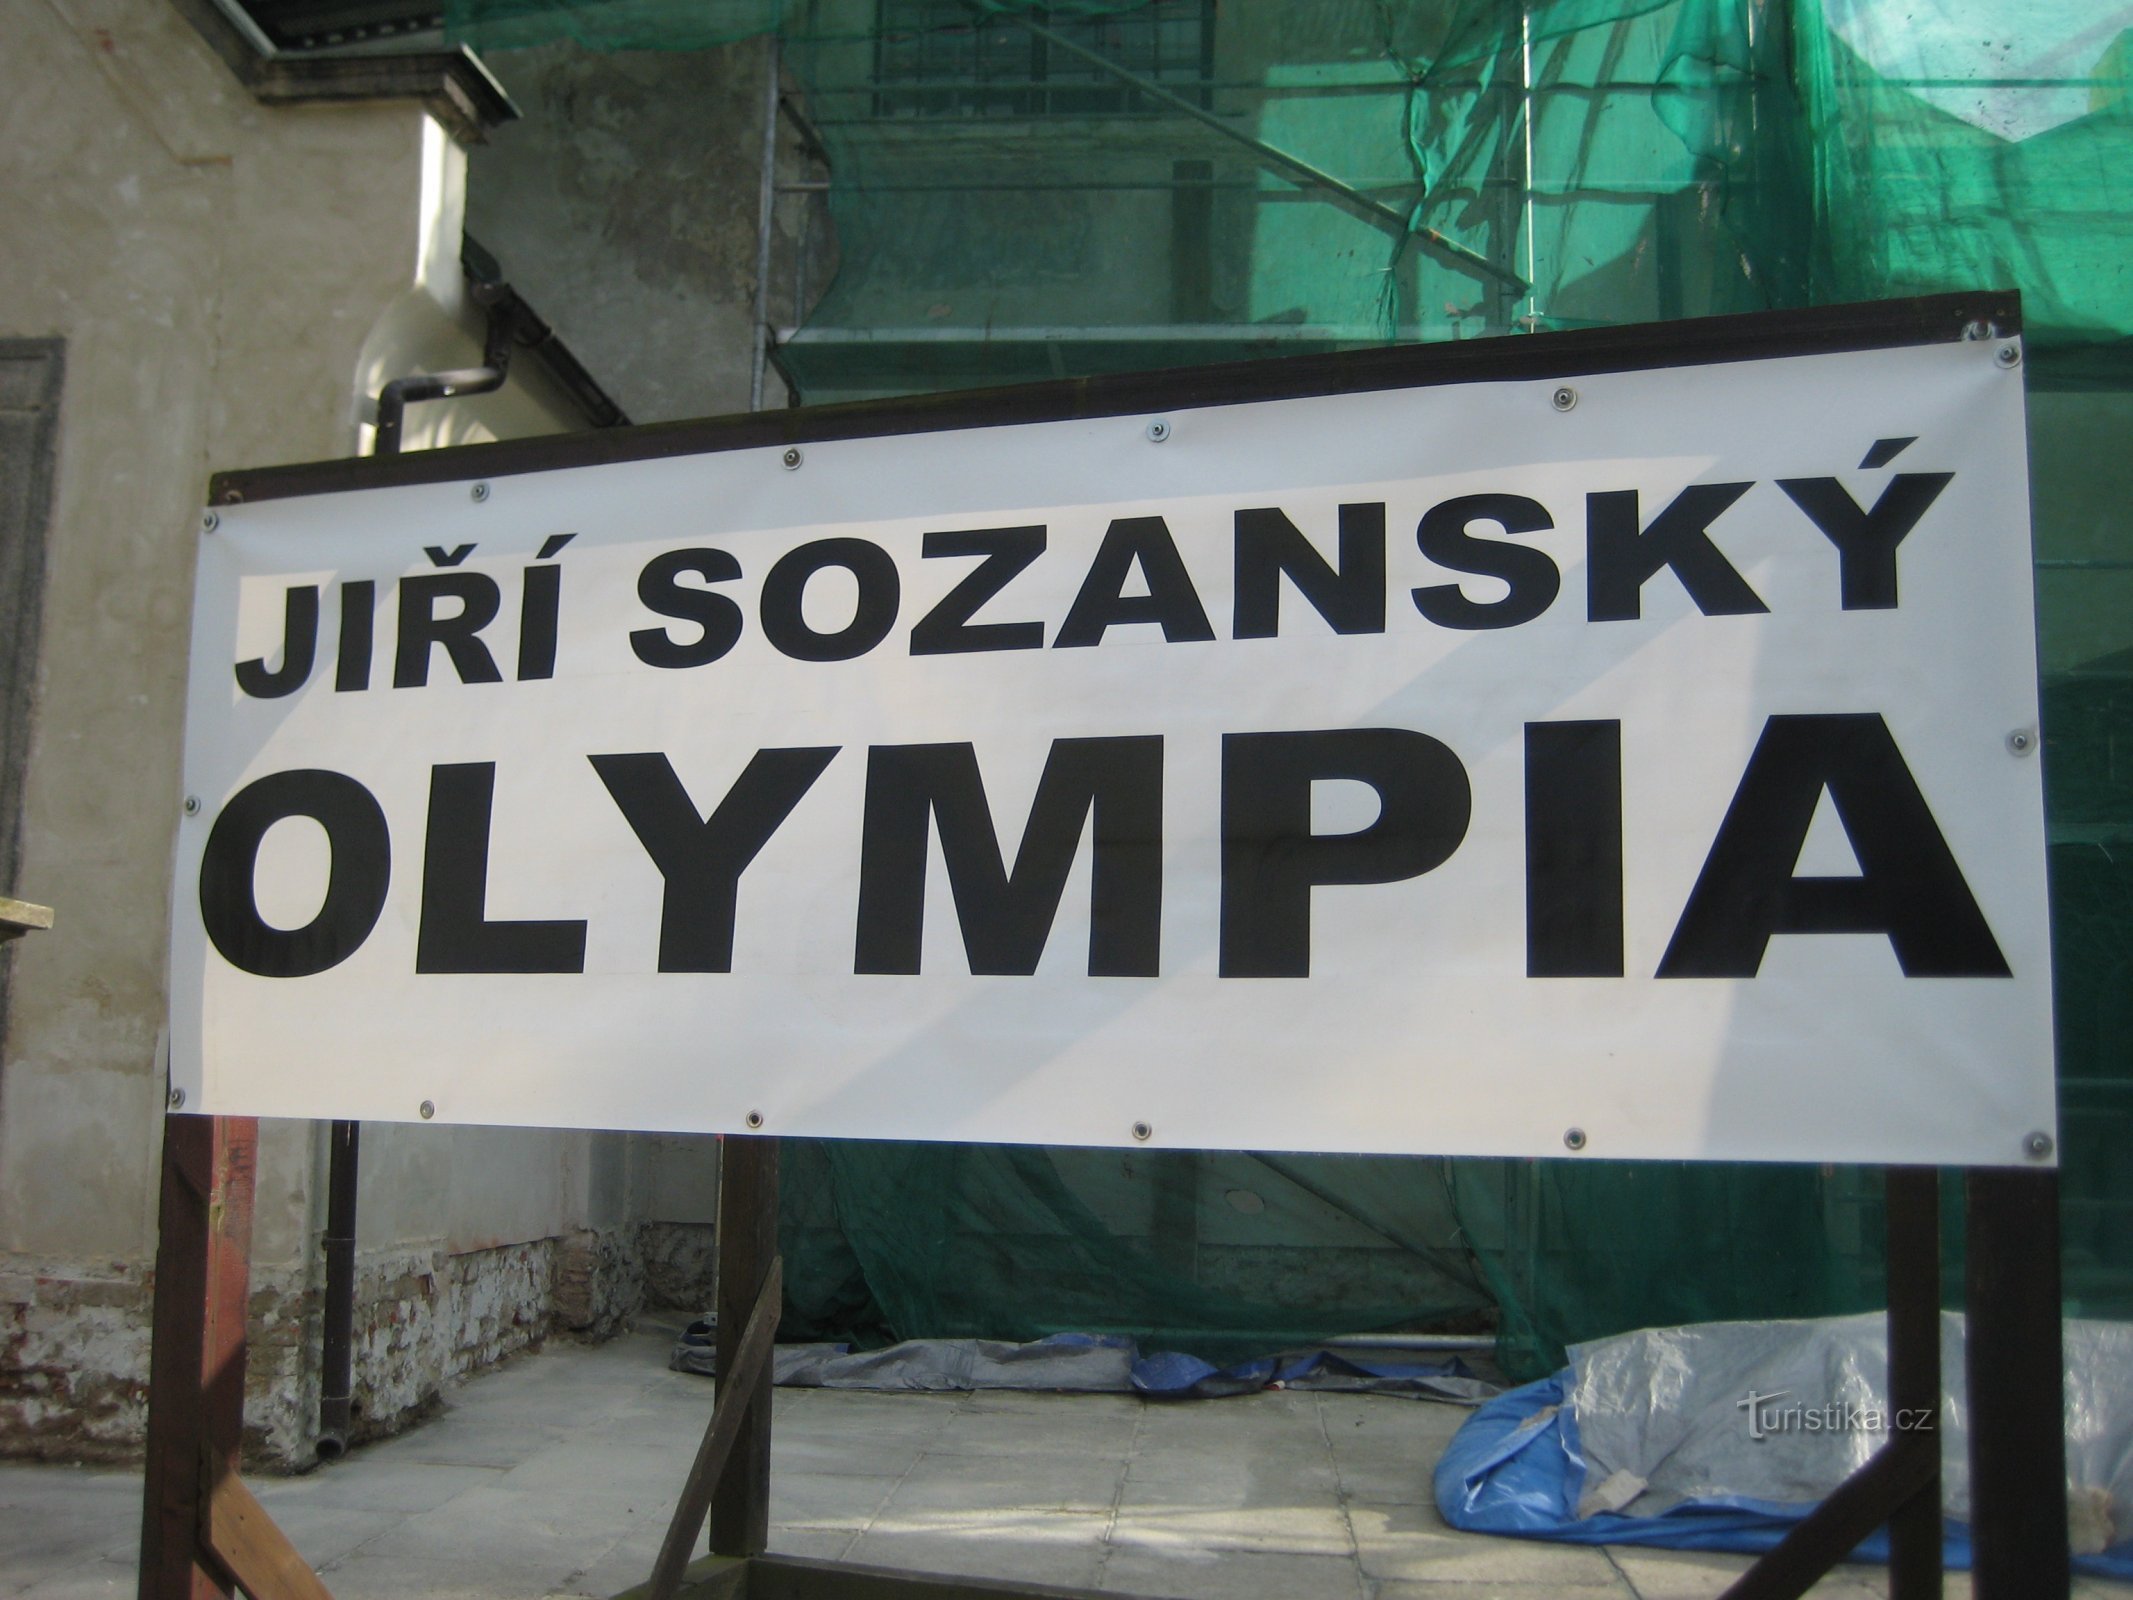 Έκθεση Jiří Sozanský - Olympia - Sokolov